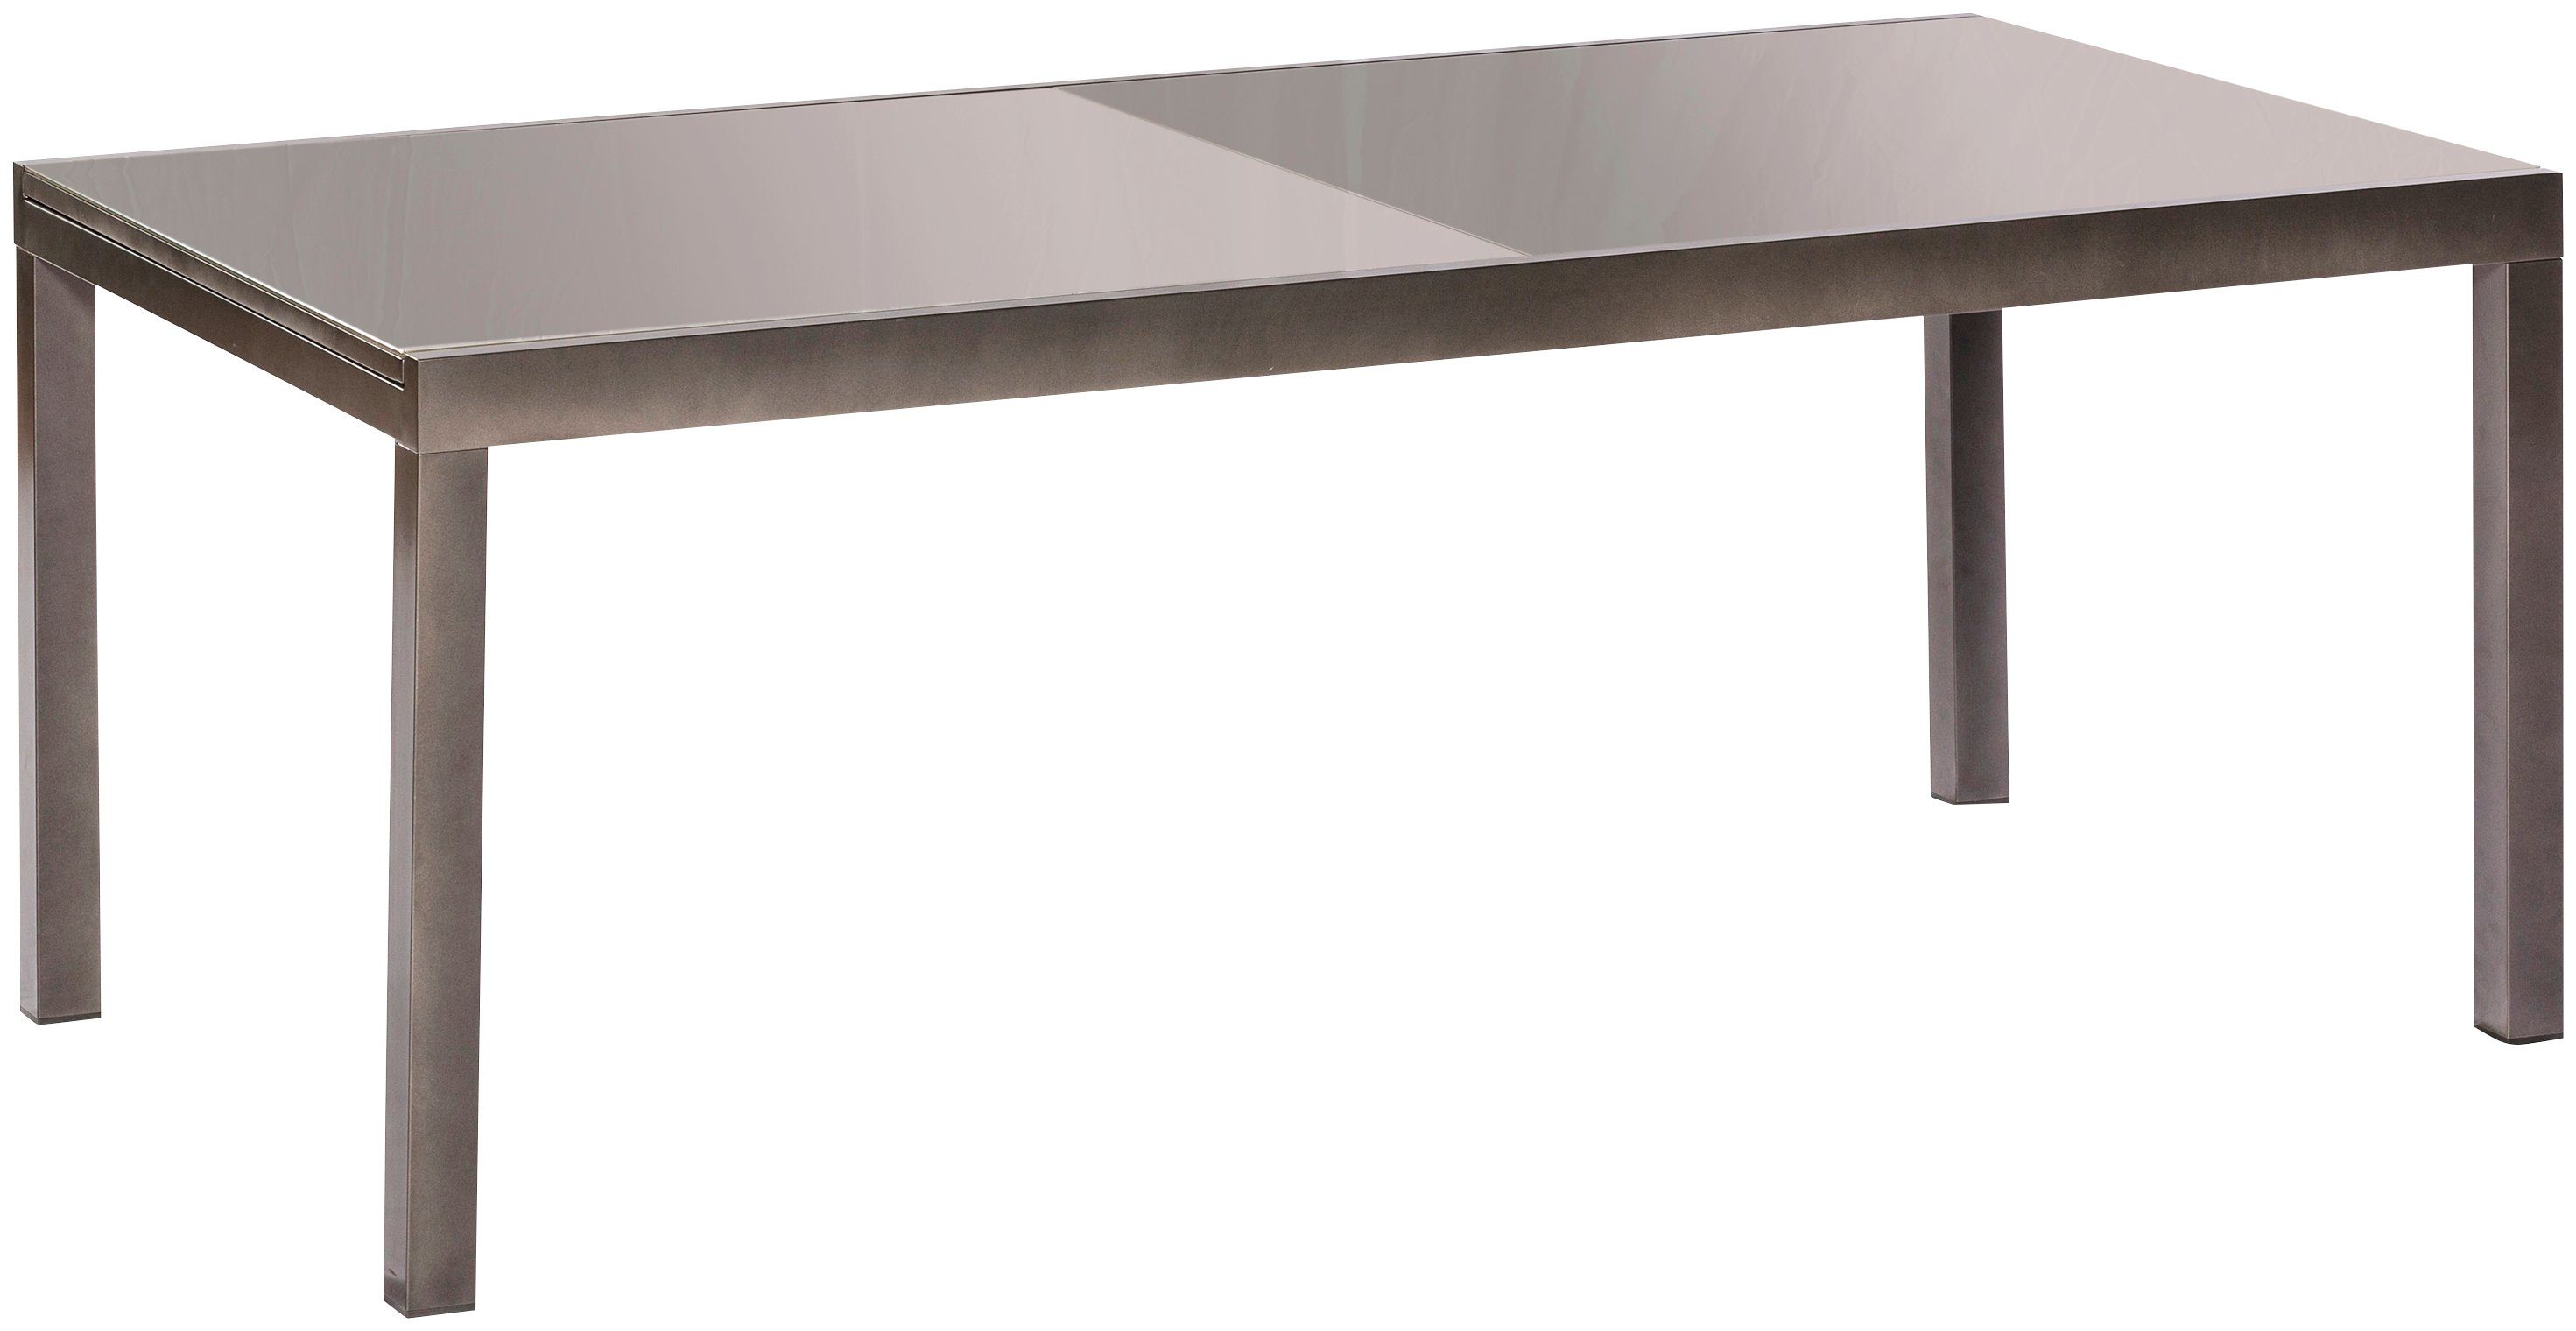 Semi AZ-Tisch, Gartentisch 110x220 cm MERXX